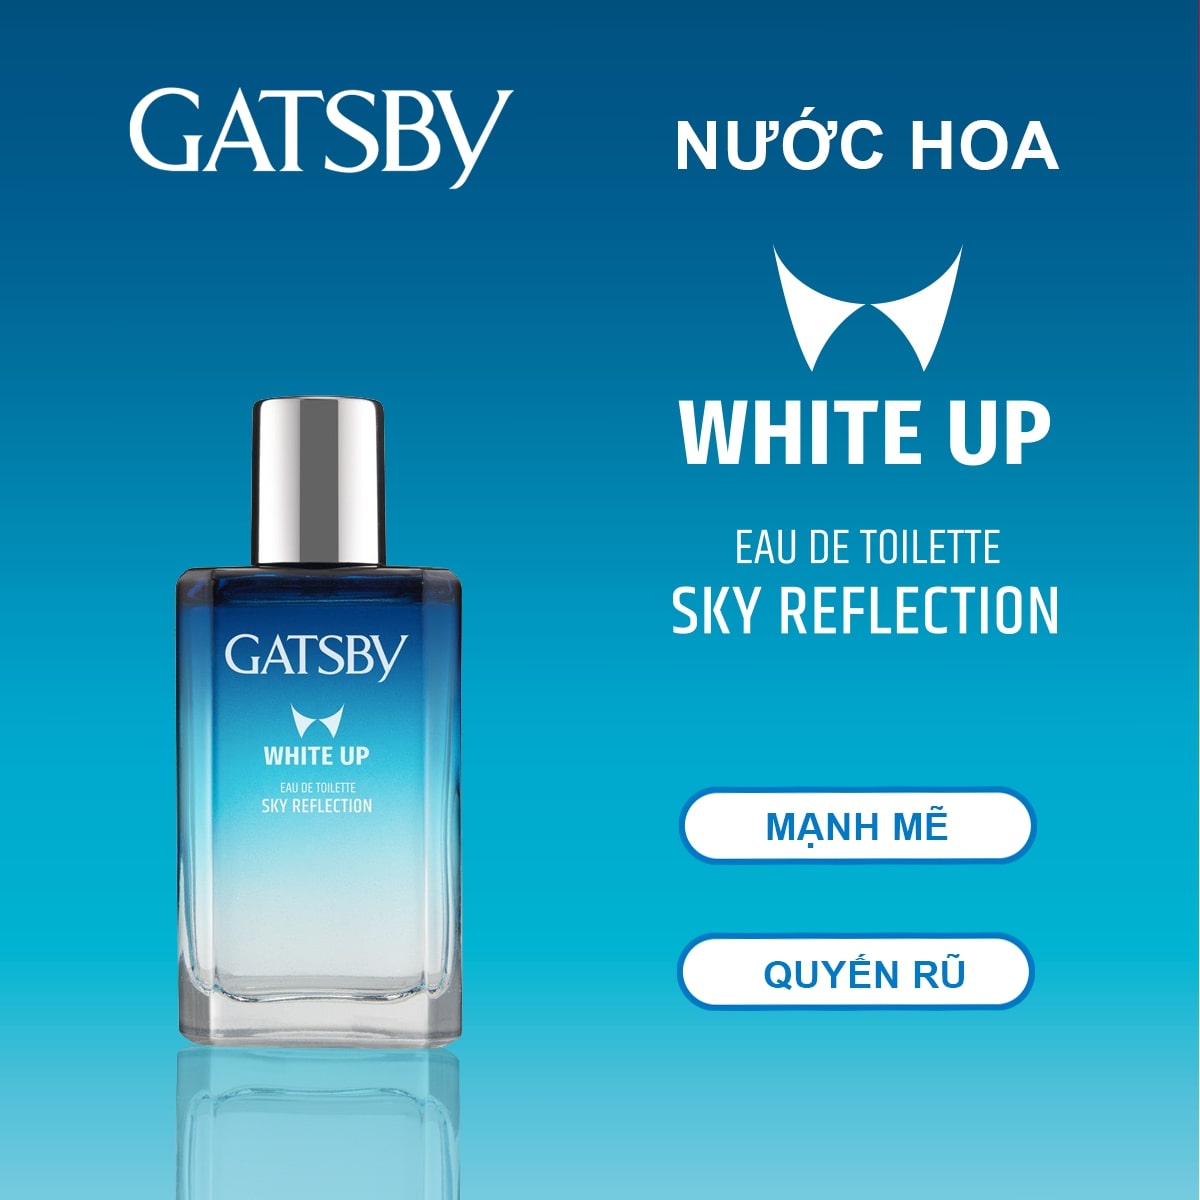 Gatsby White Up Eau De Toilette Sky Reflection